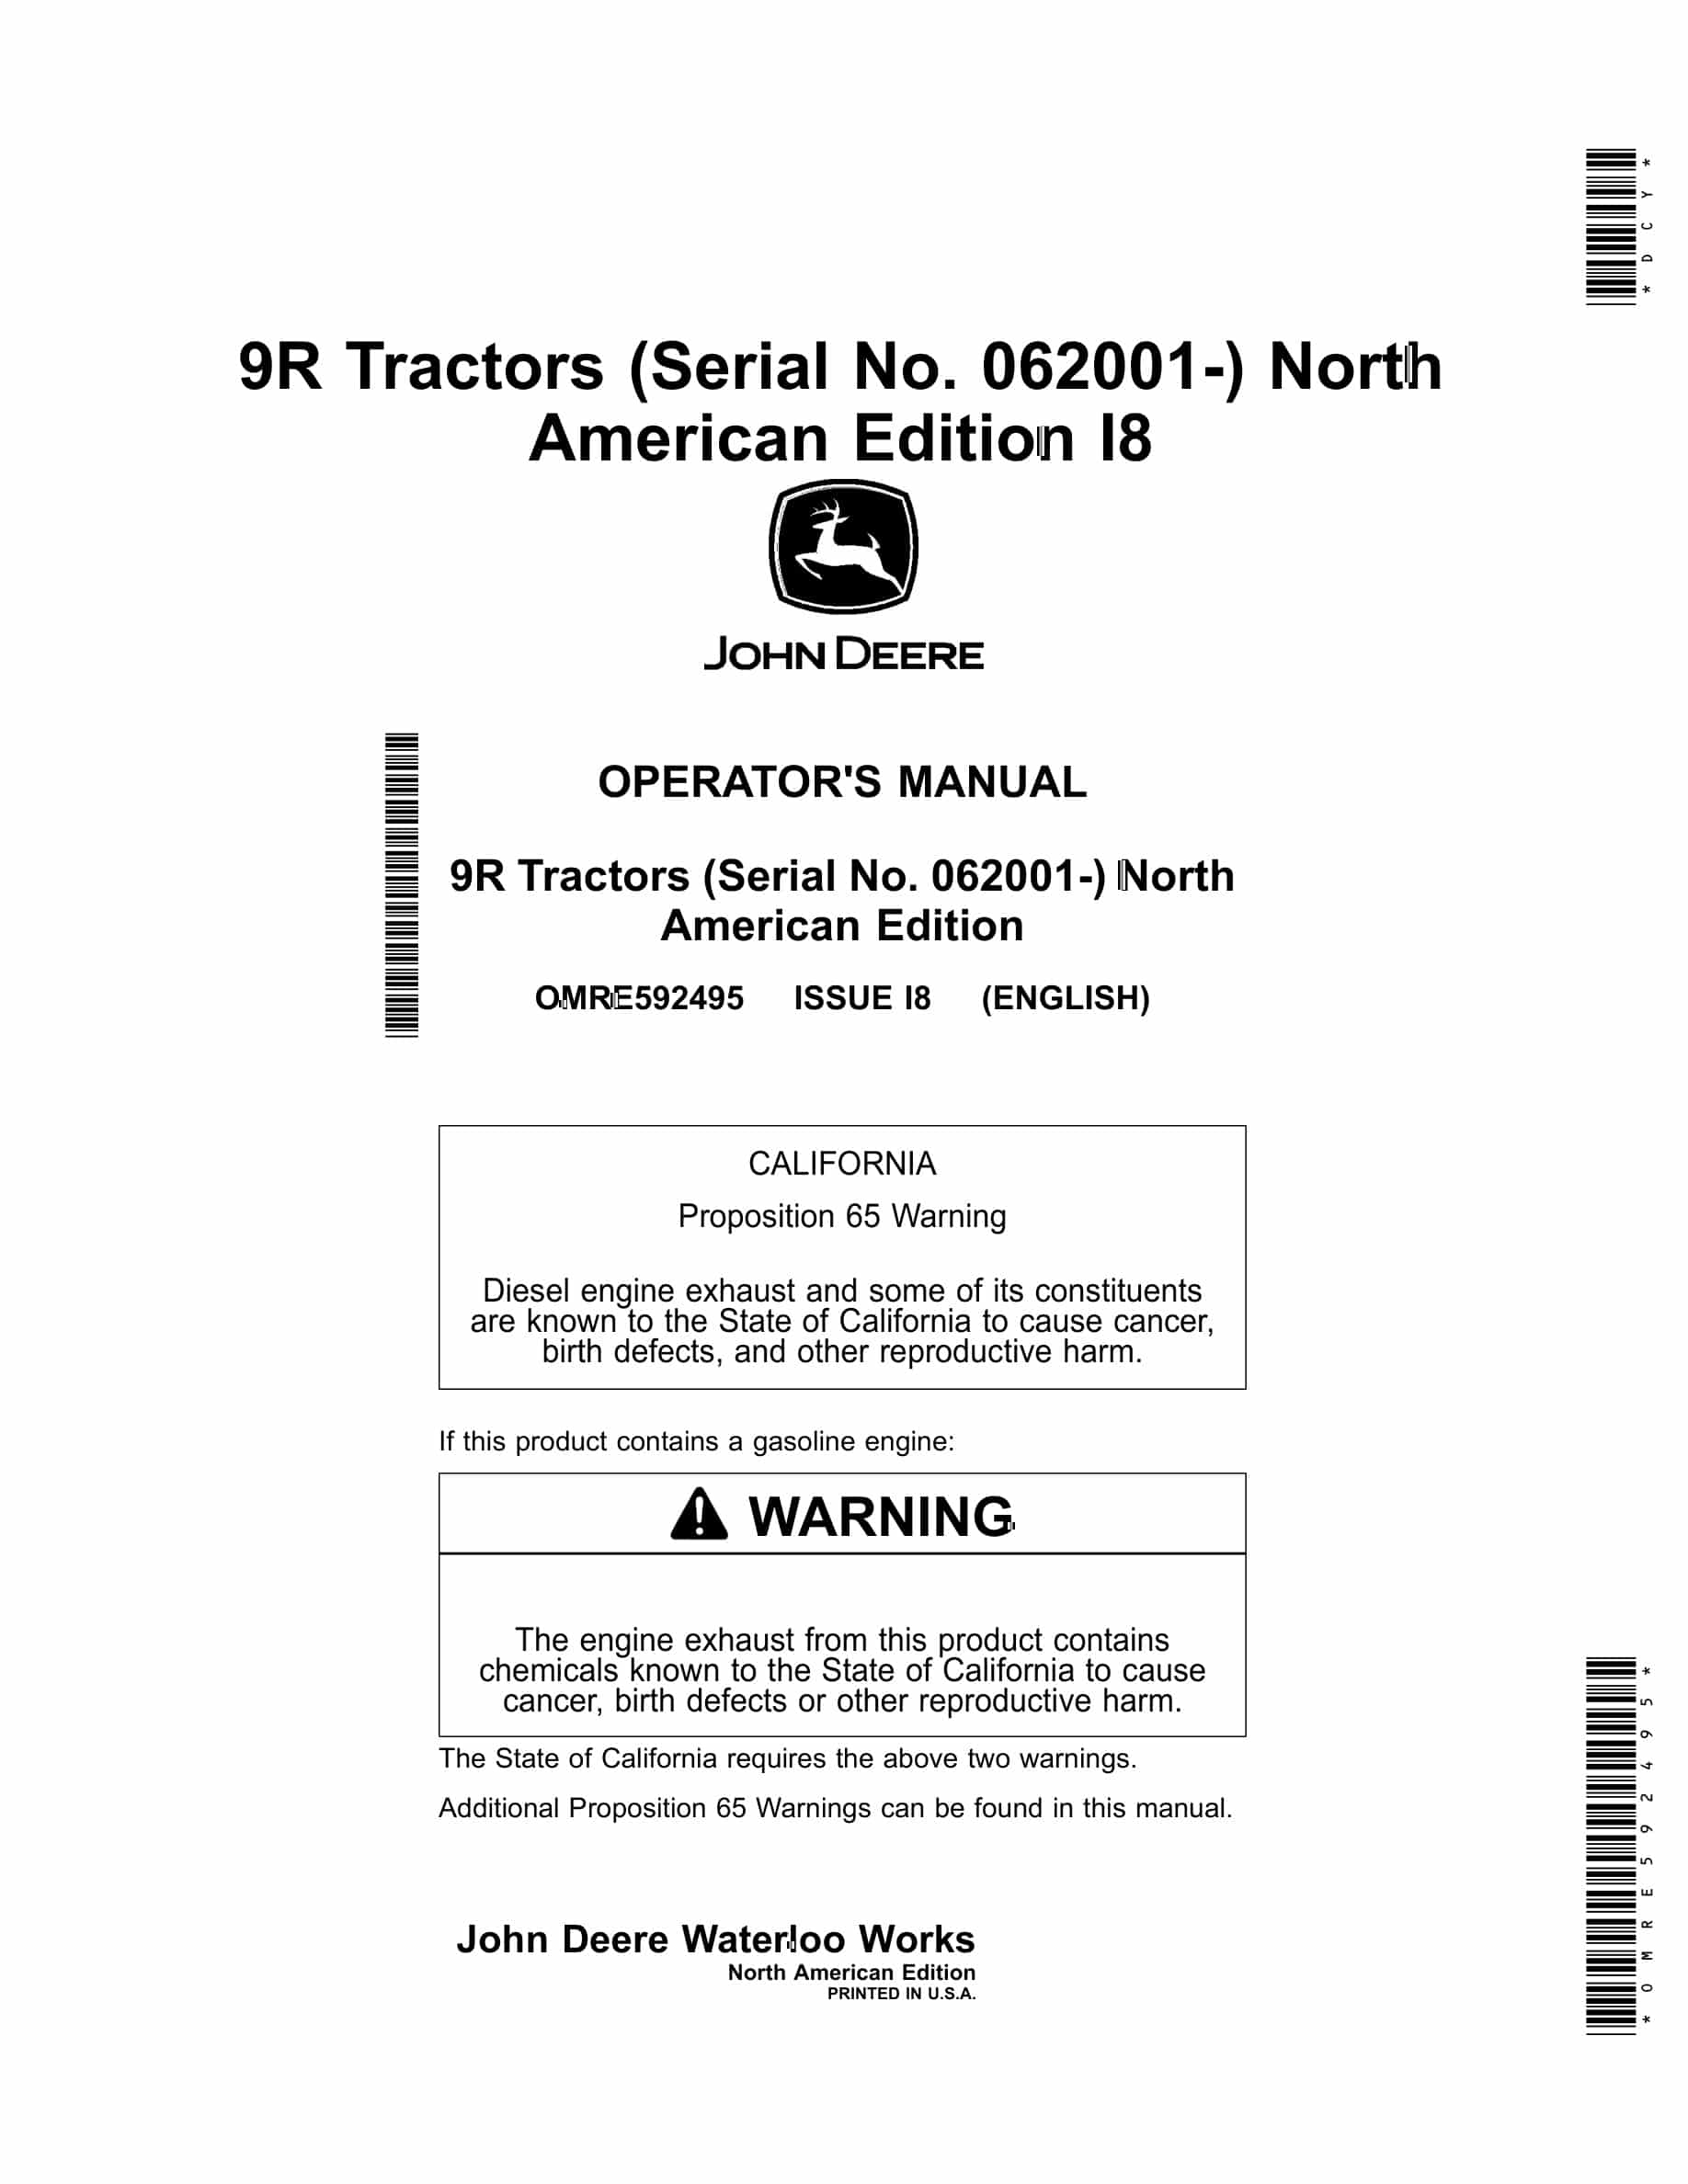 John Deere 9R Tractor Operator Manual OMRE592495-1